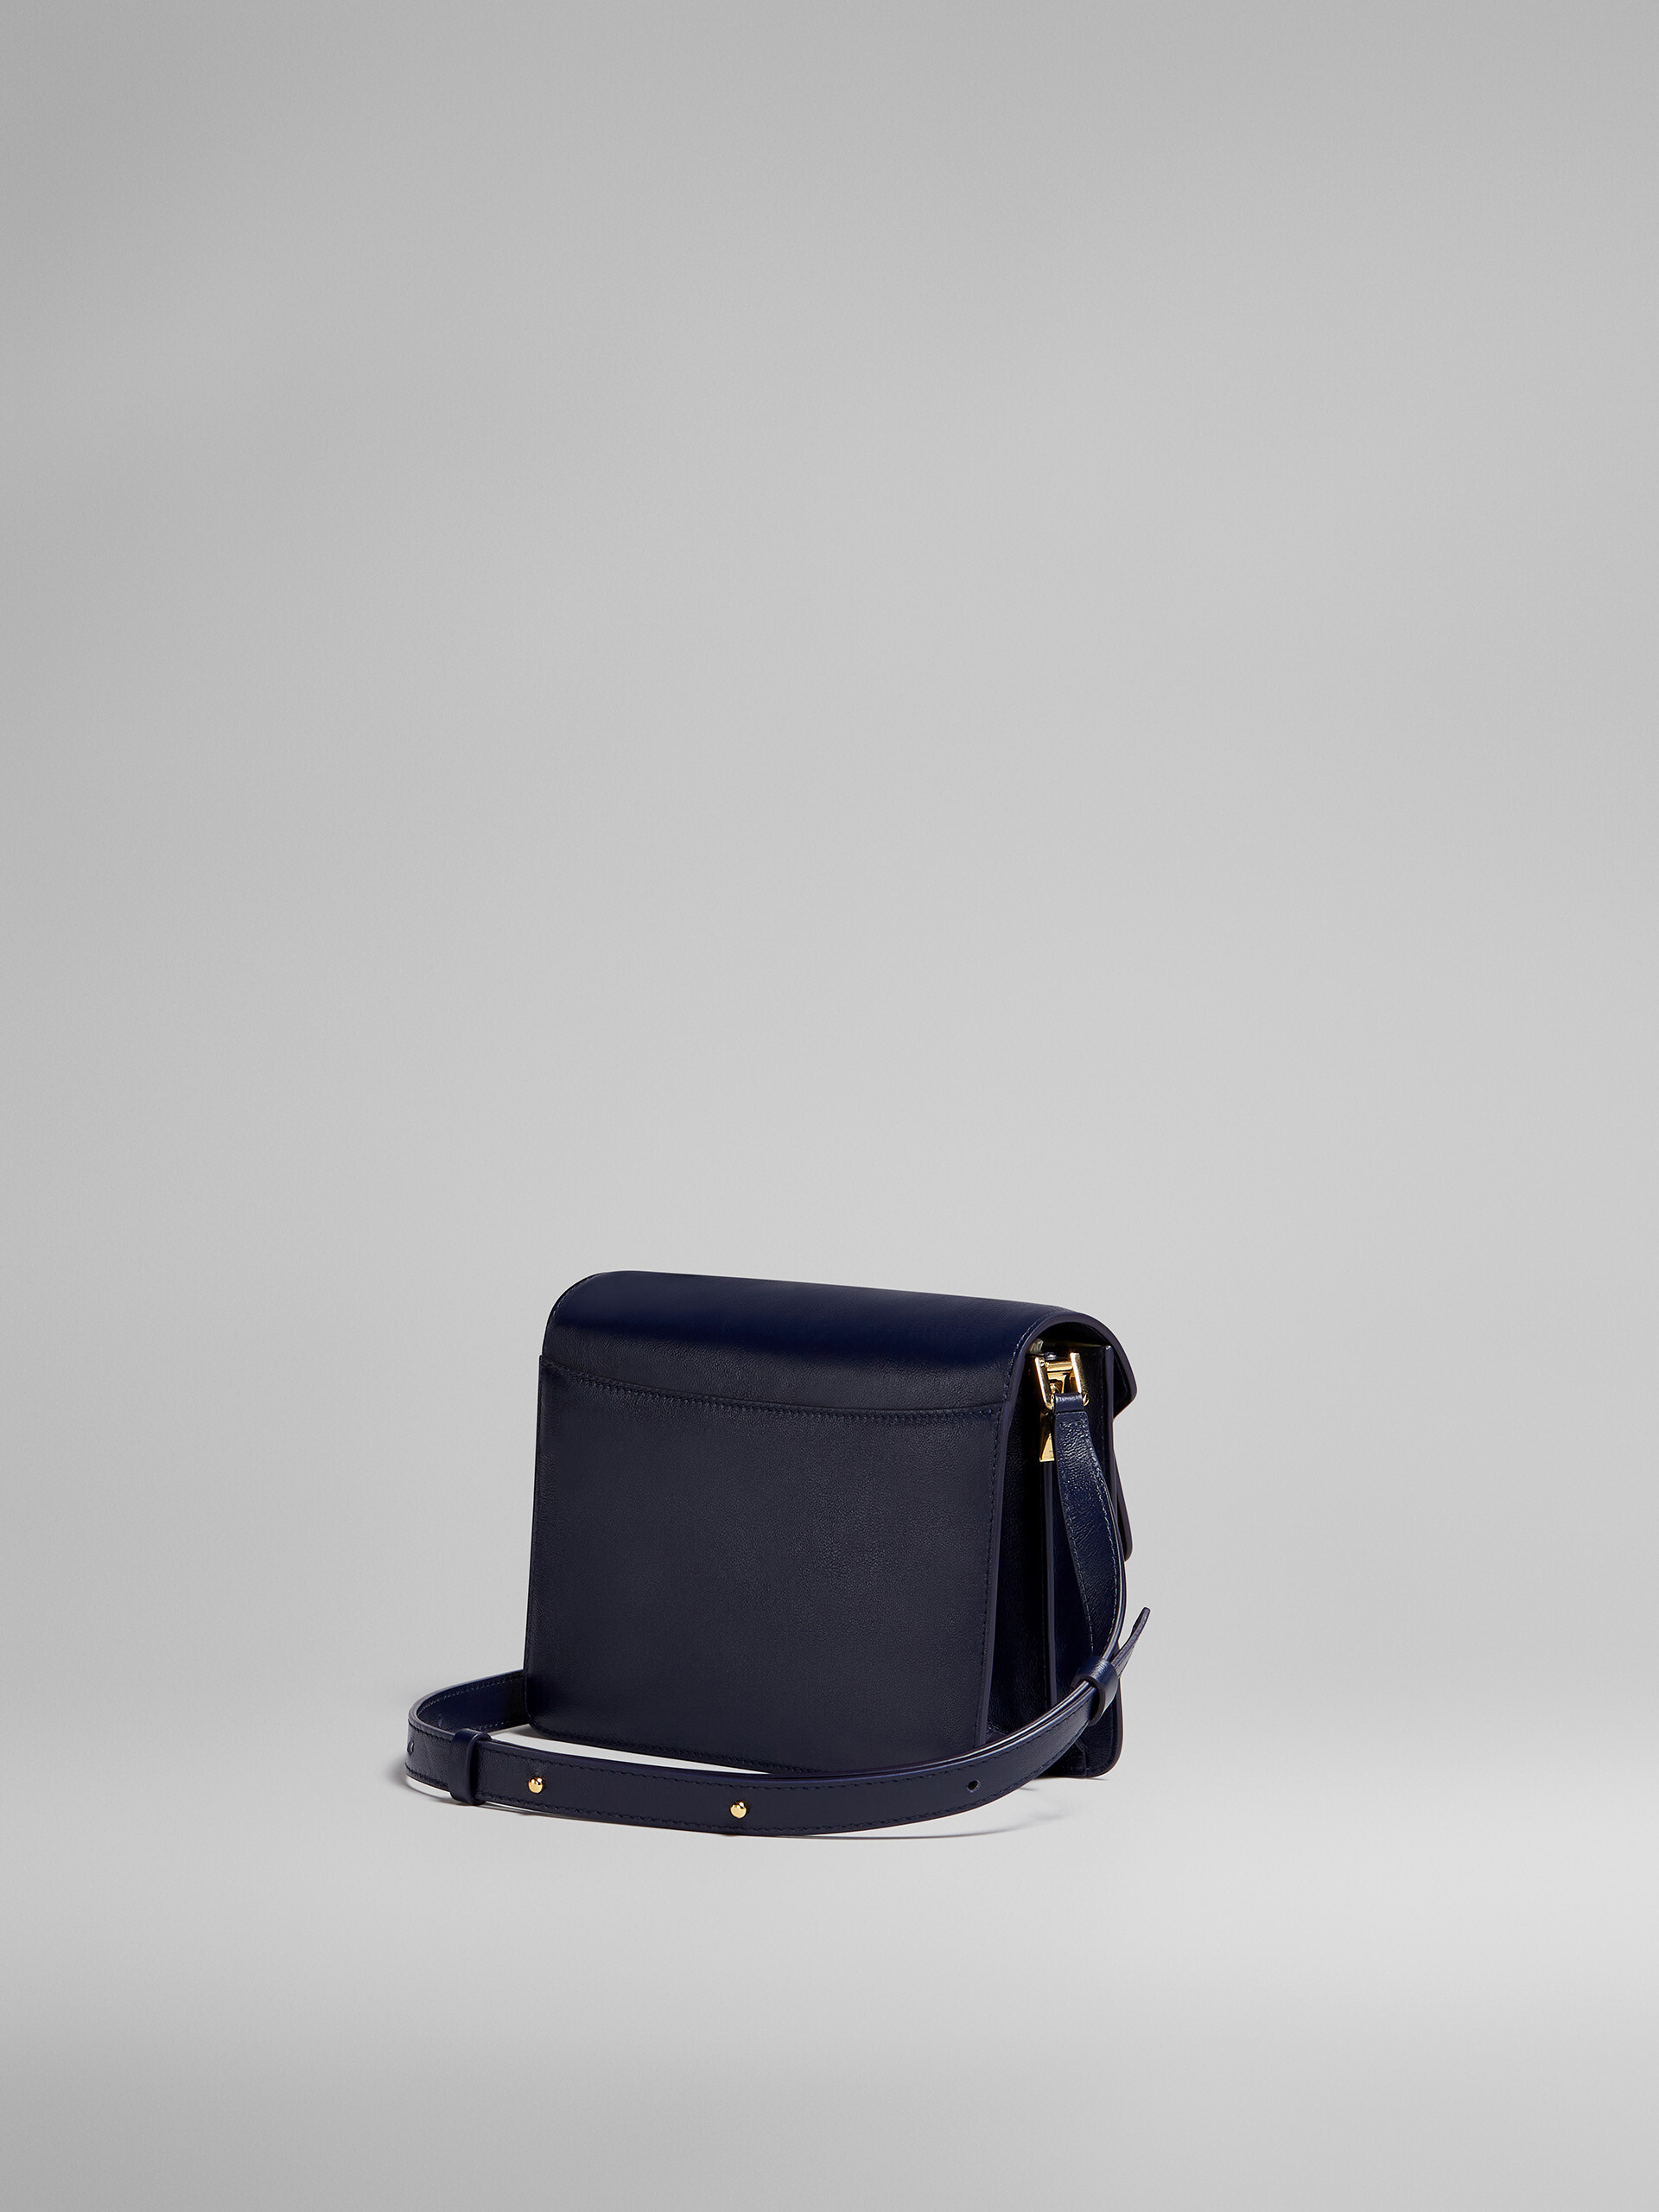 TRUNK SOFT medium bag in blue leather - Shoulder Bag - Image 3